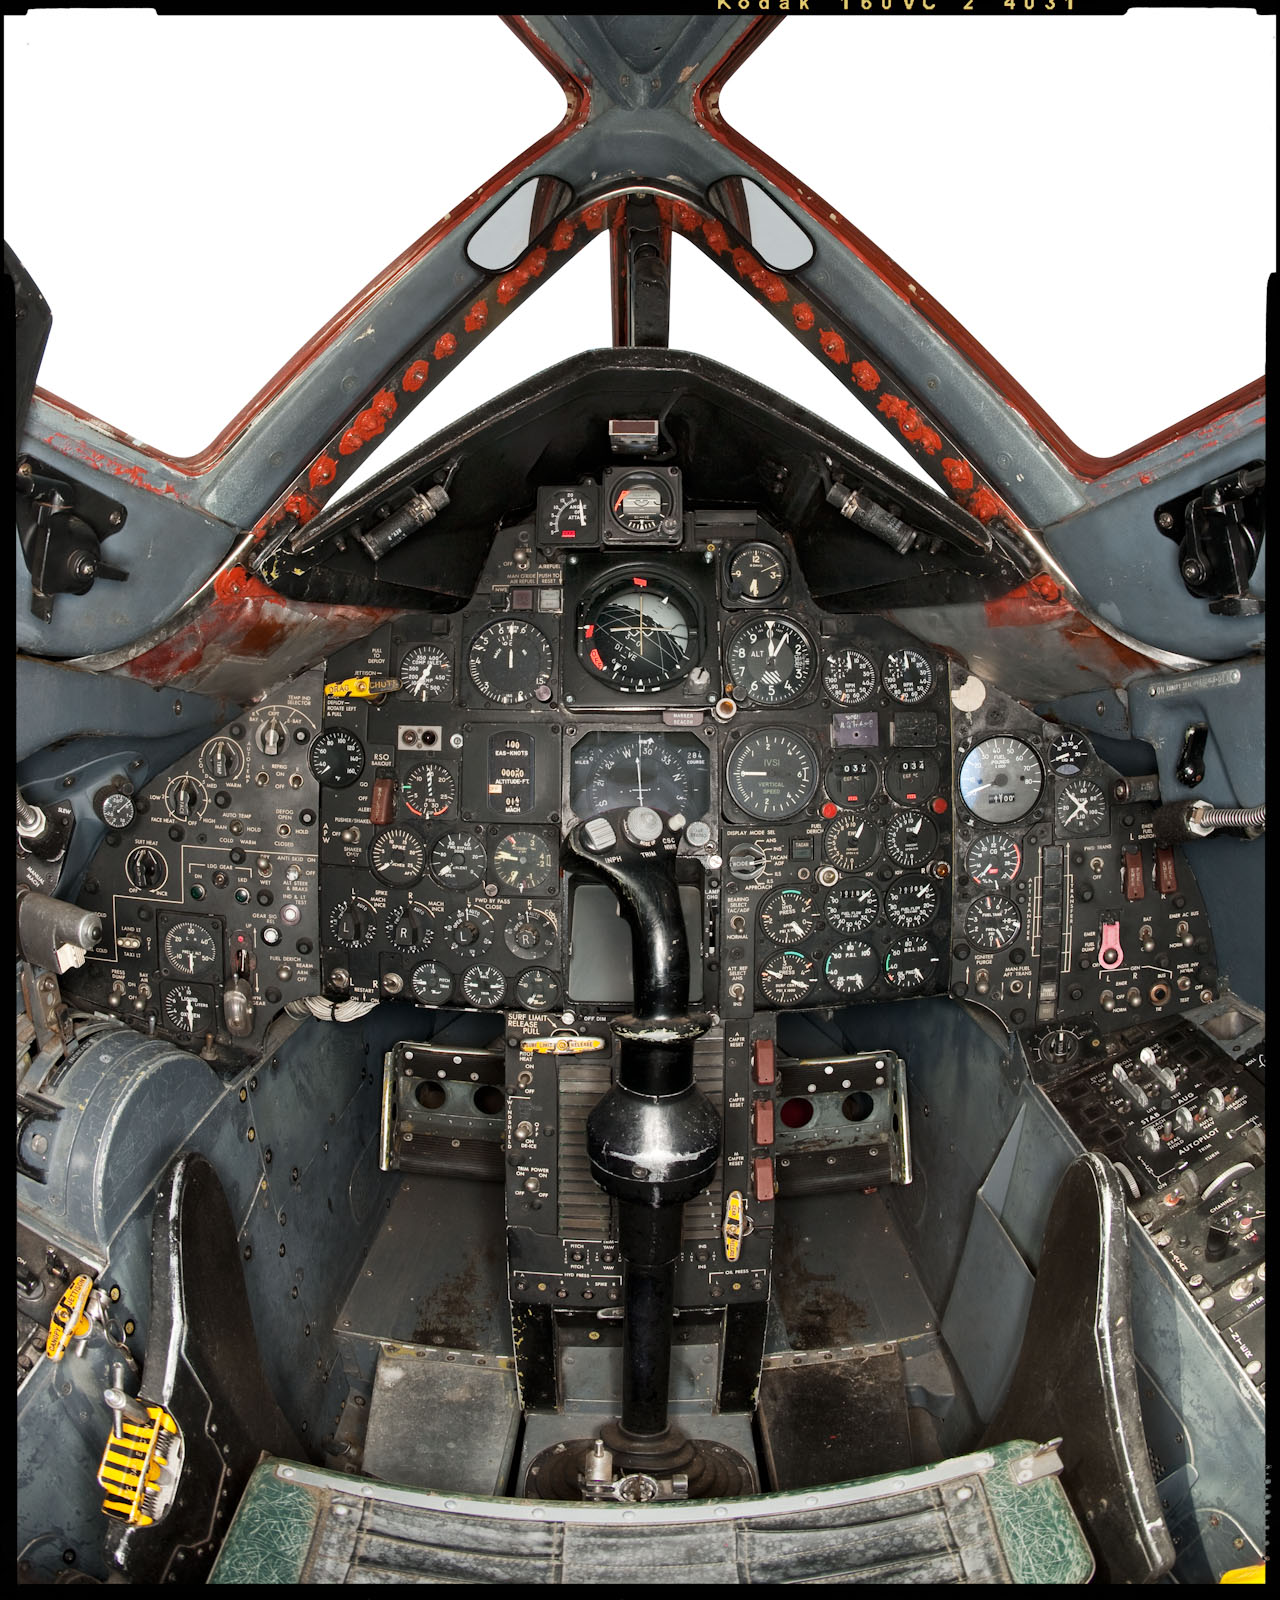 SR-71 Blackbird - Atwater, CA - Wired Magazine